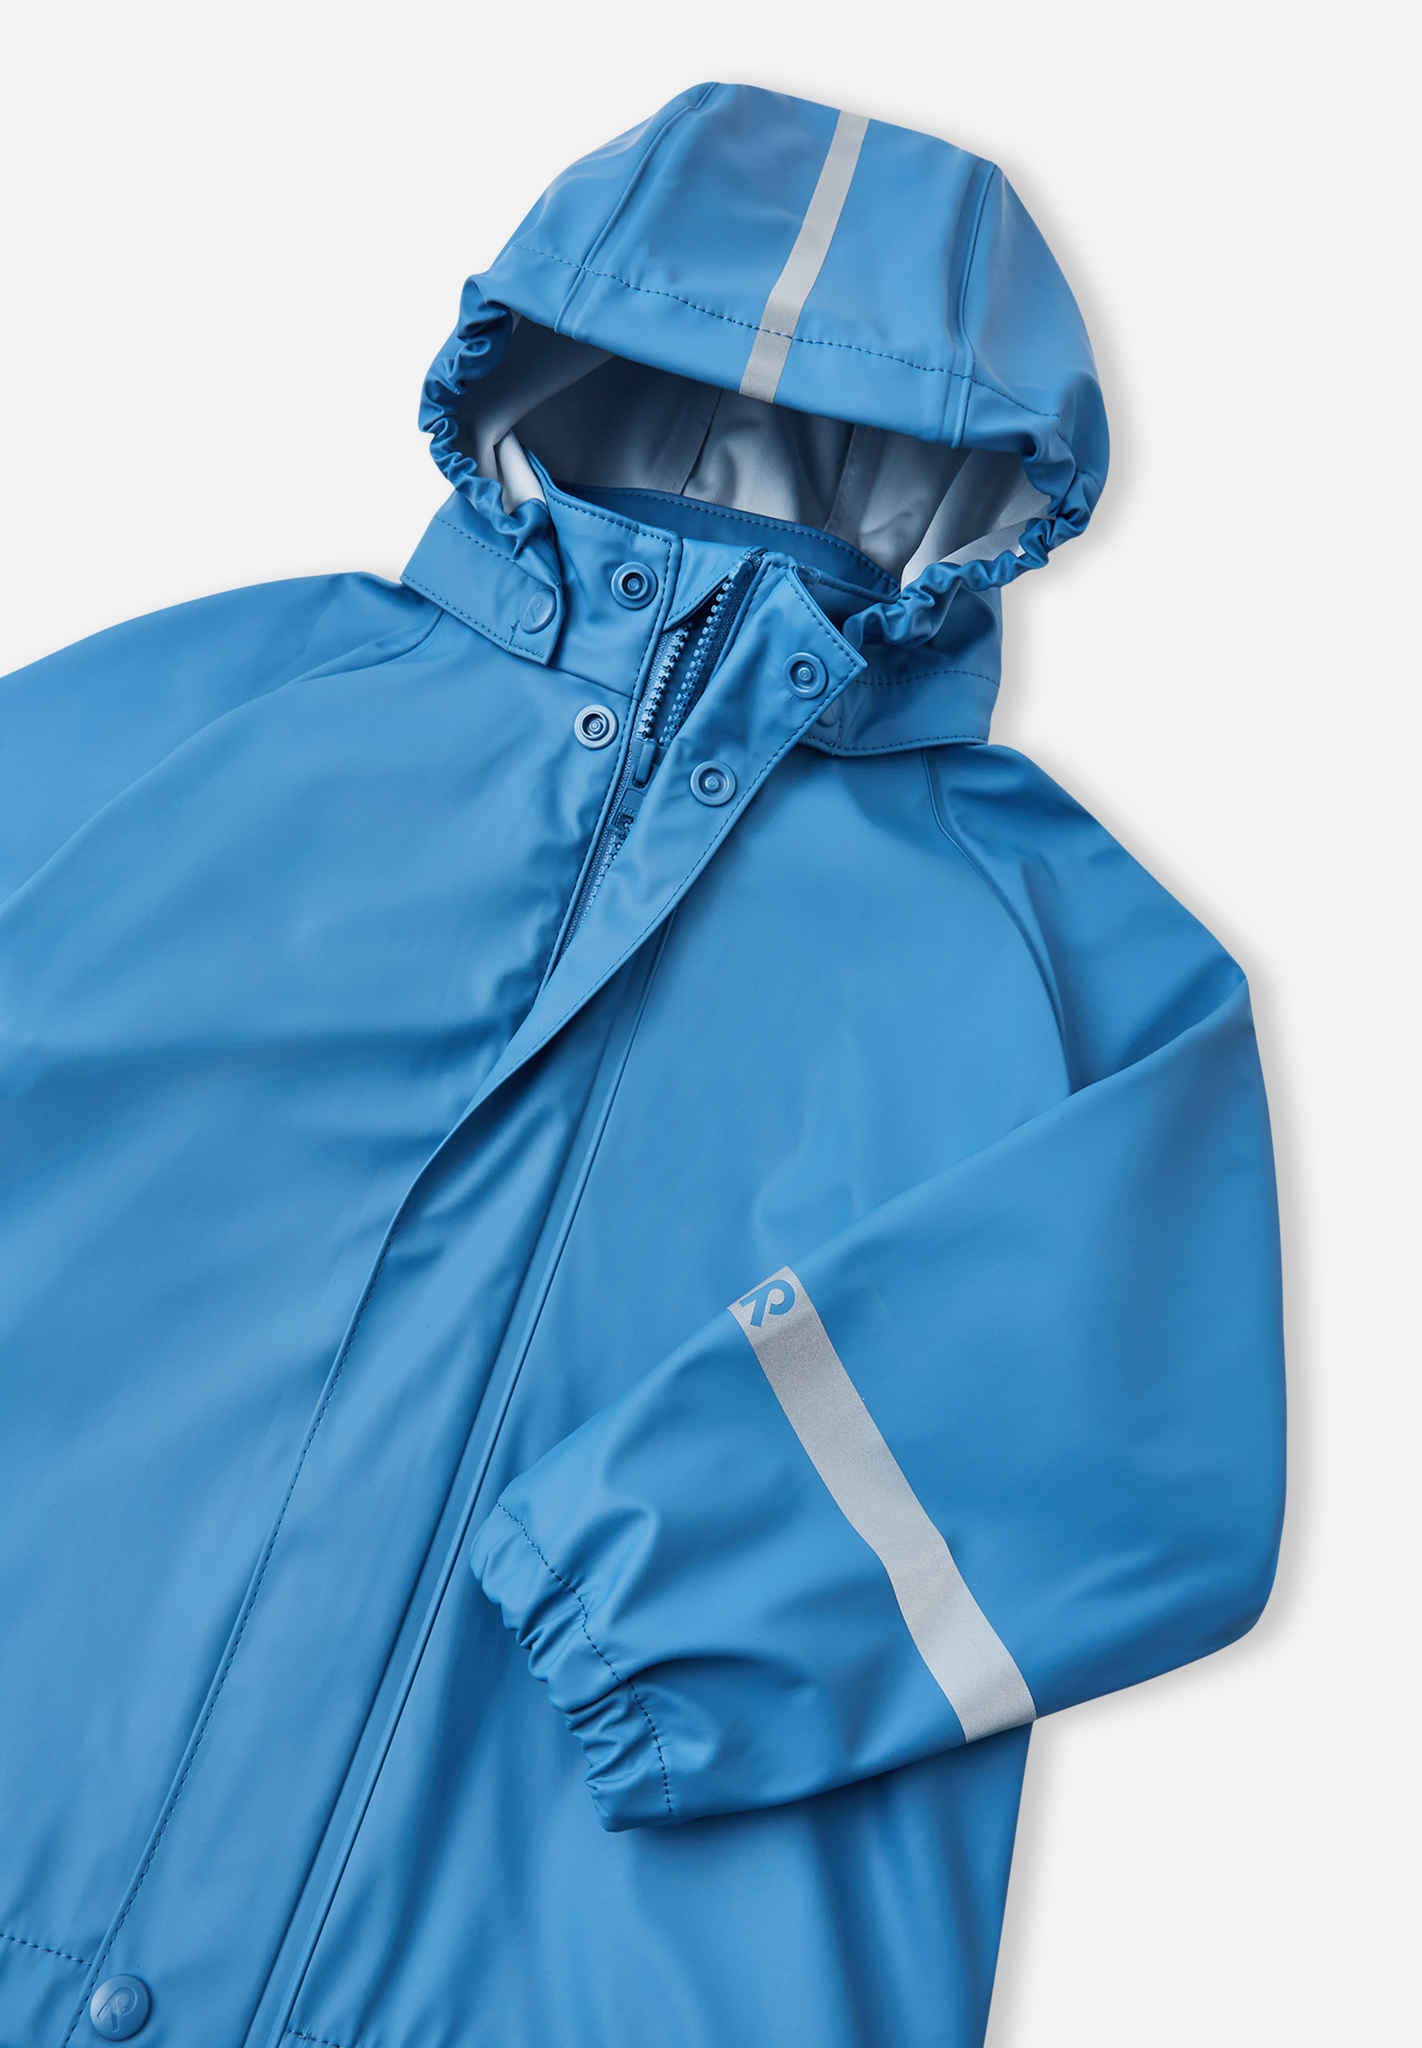 Rain Suit for Men Women Waterproof Zipper Coveralls One Piece Hooded  Rainwear